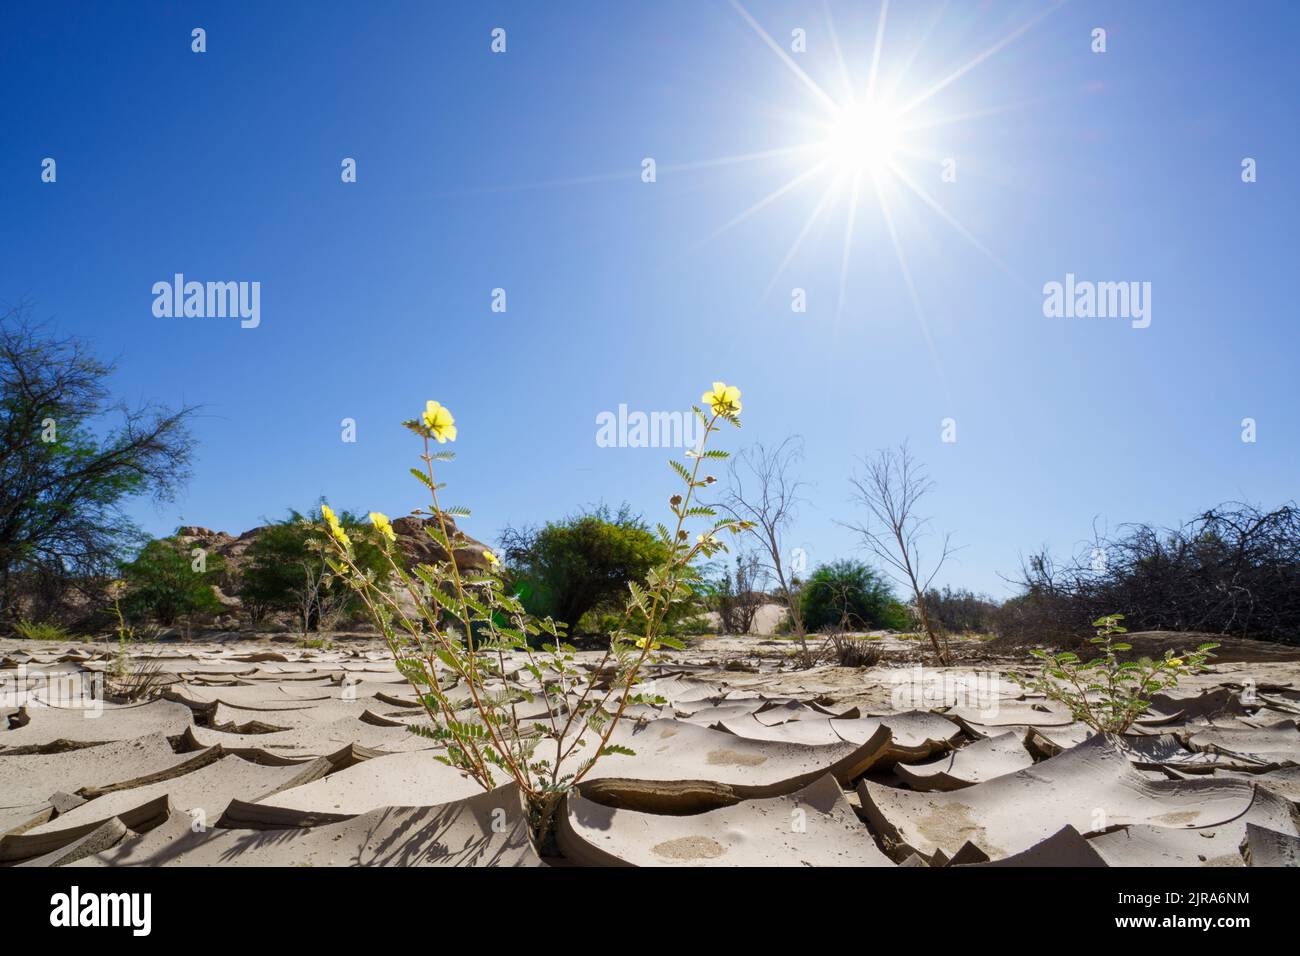 Symbolisches Bild, Hoffnung, Umwelt, Klimawandel, Grüne Pflanzen wachsen in trockenen Flussbett Mustern. Swakop River, Namibia, Afrika Stockfoto